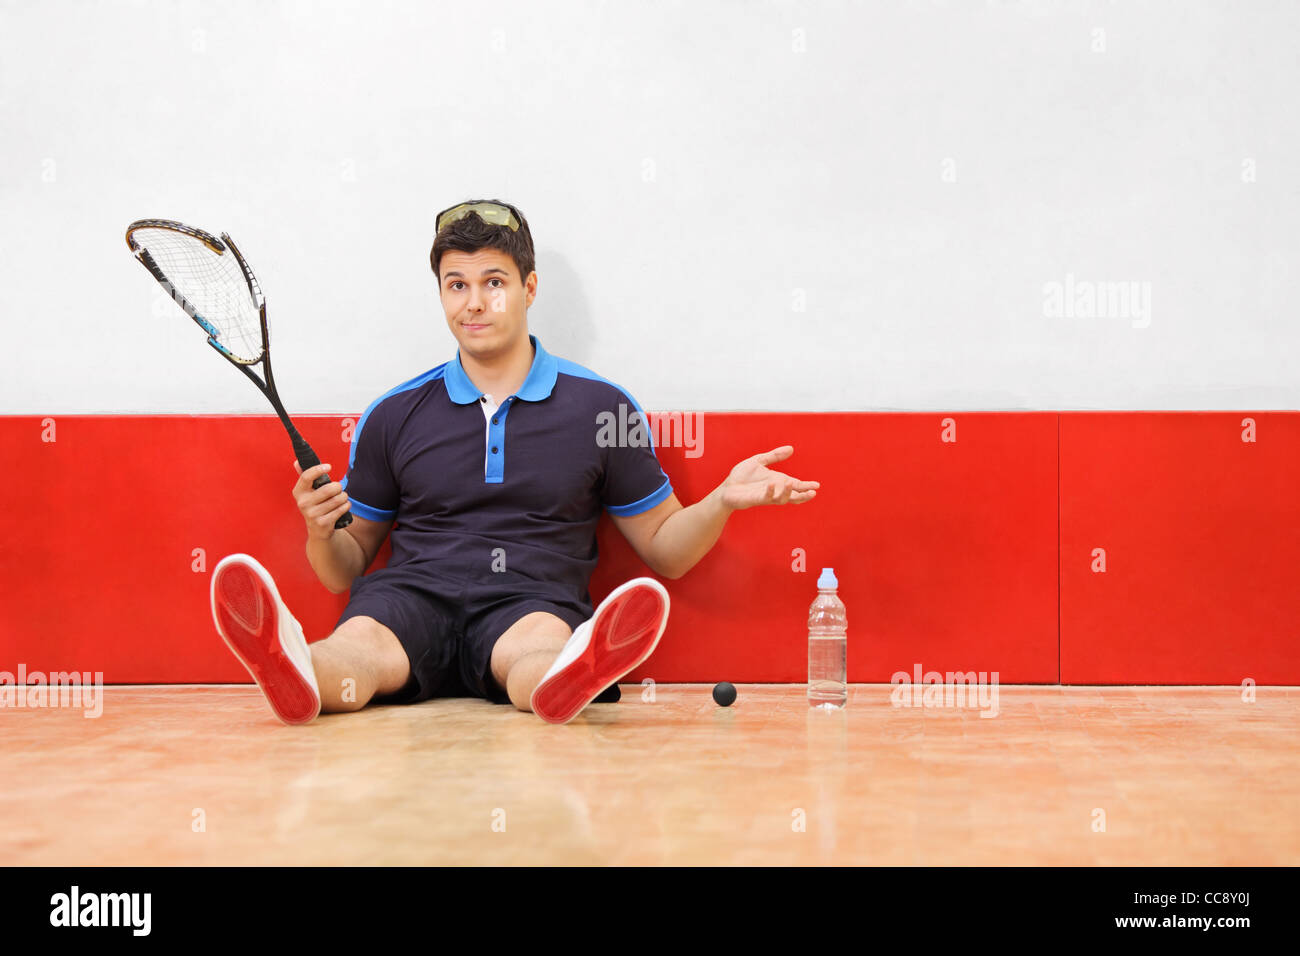 Un jeune joueur de squash déçu tenant une raquette cassée Banque D'Images